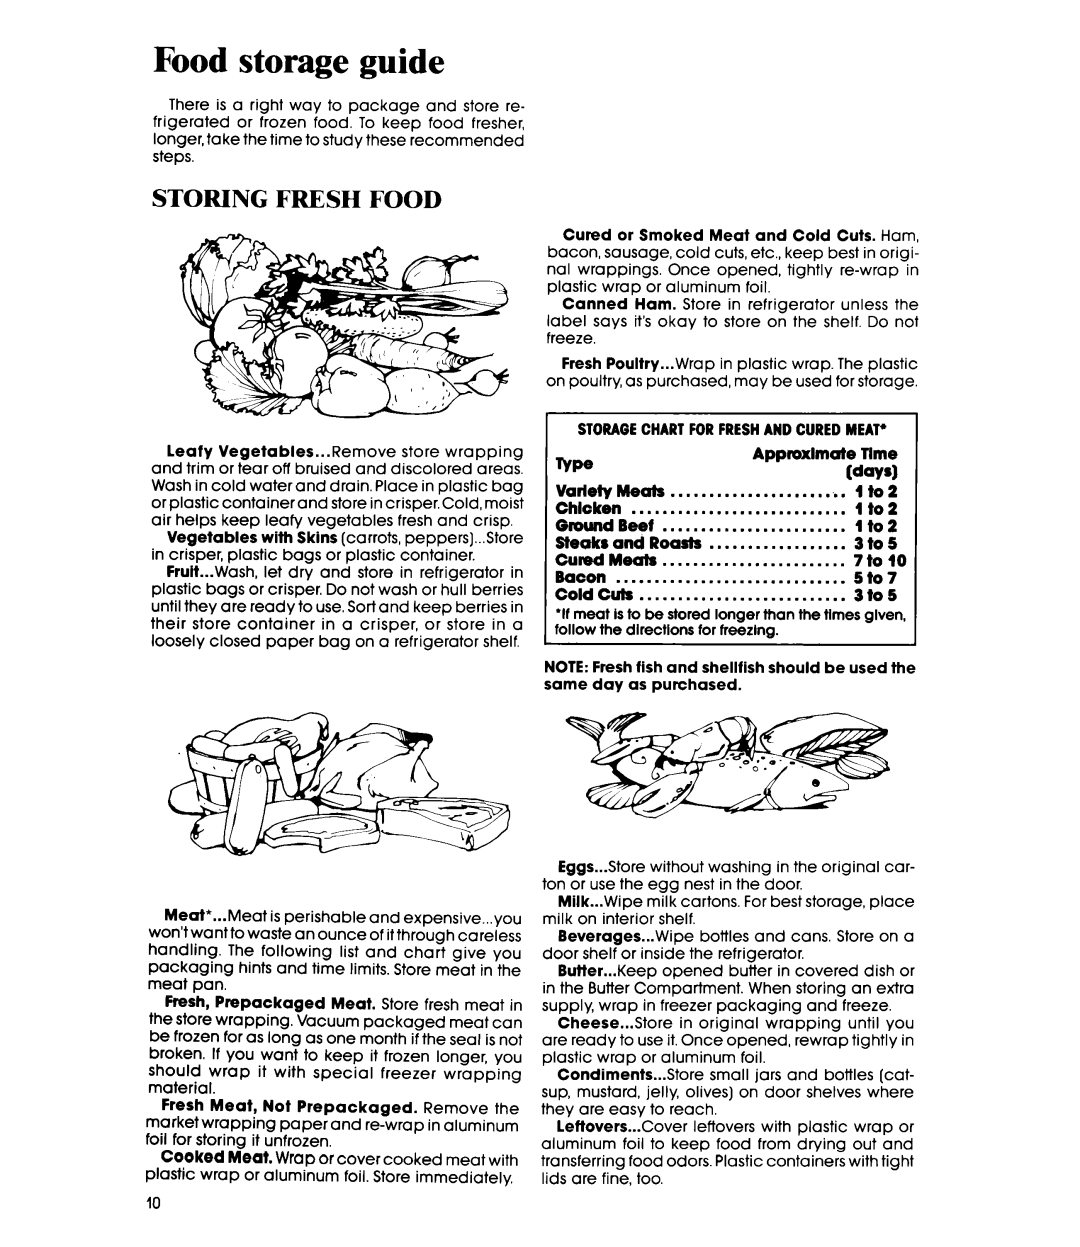 Whirlpool ETl4JM manual Food storage guide, Storing Fresh Food 